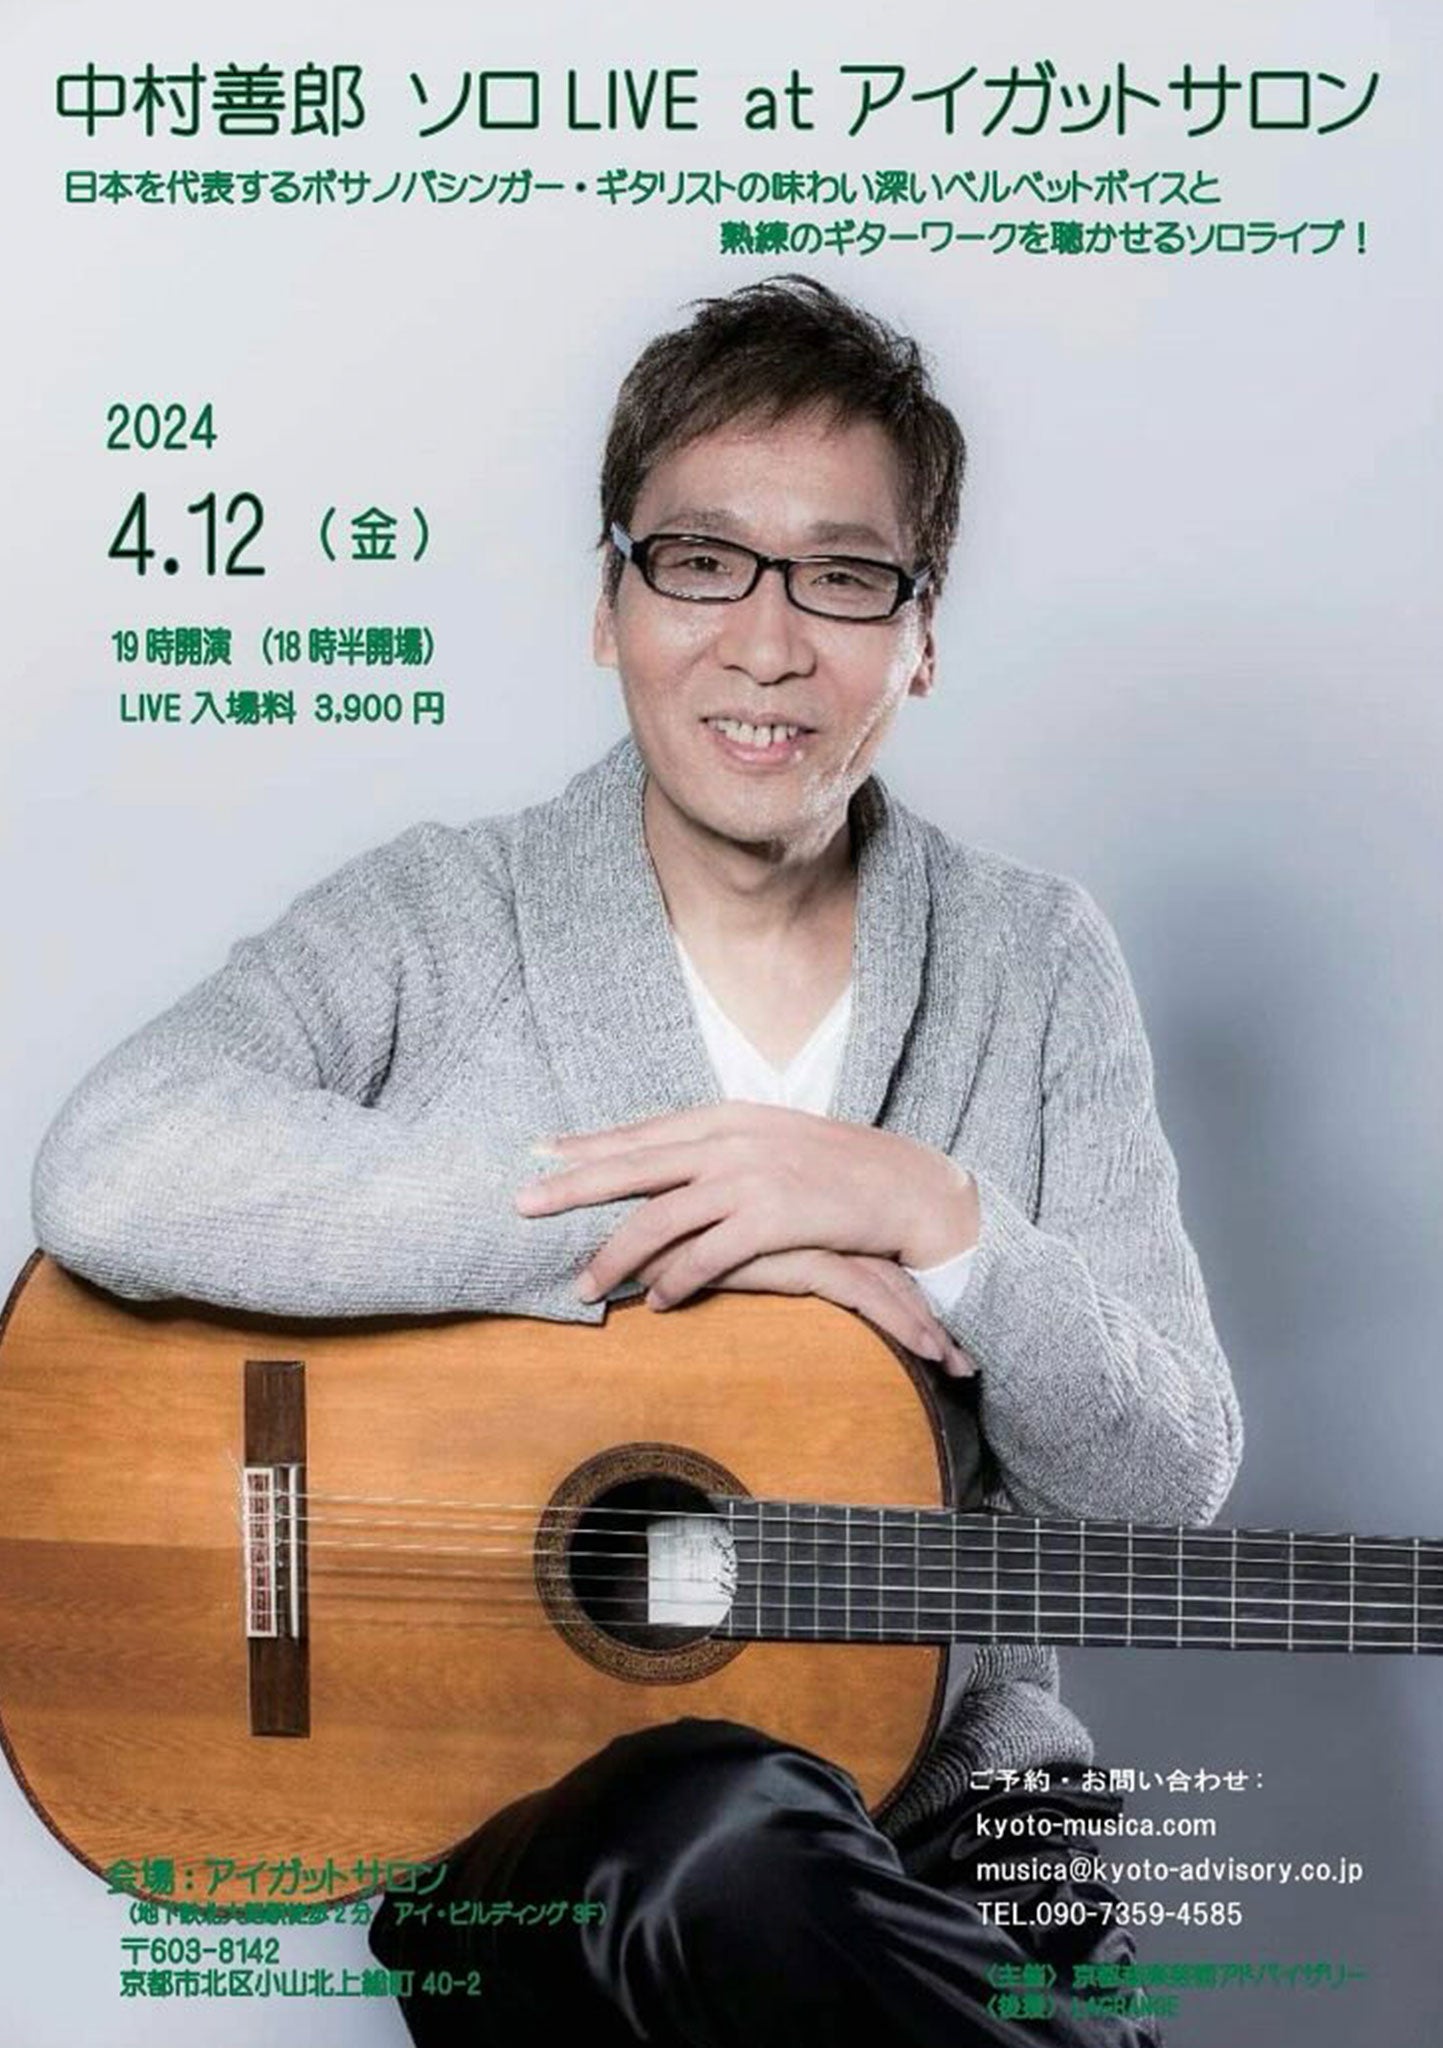 中村善郎ソロ LIVE at アイガットサロン -2024.4.12